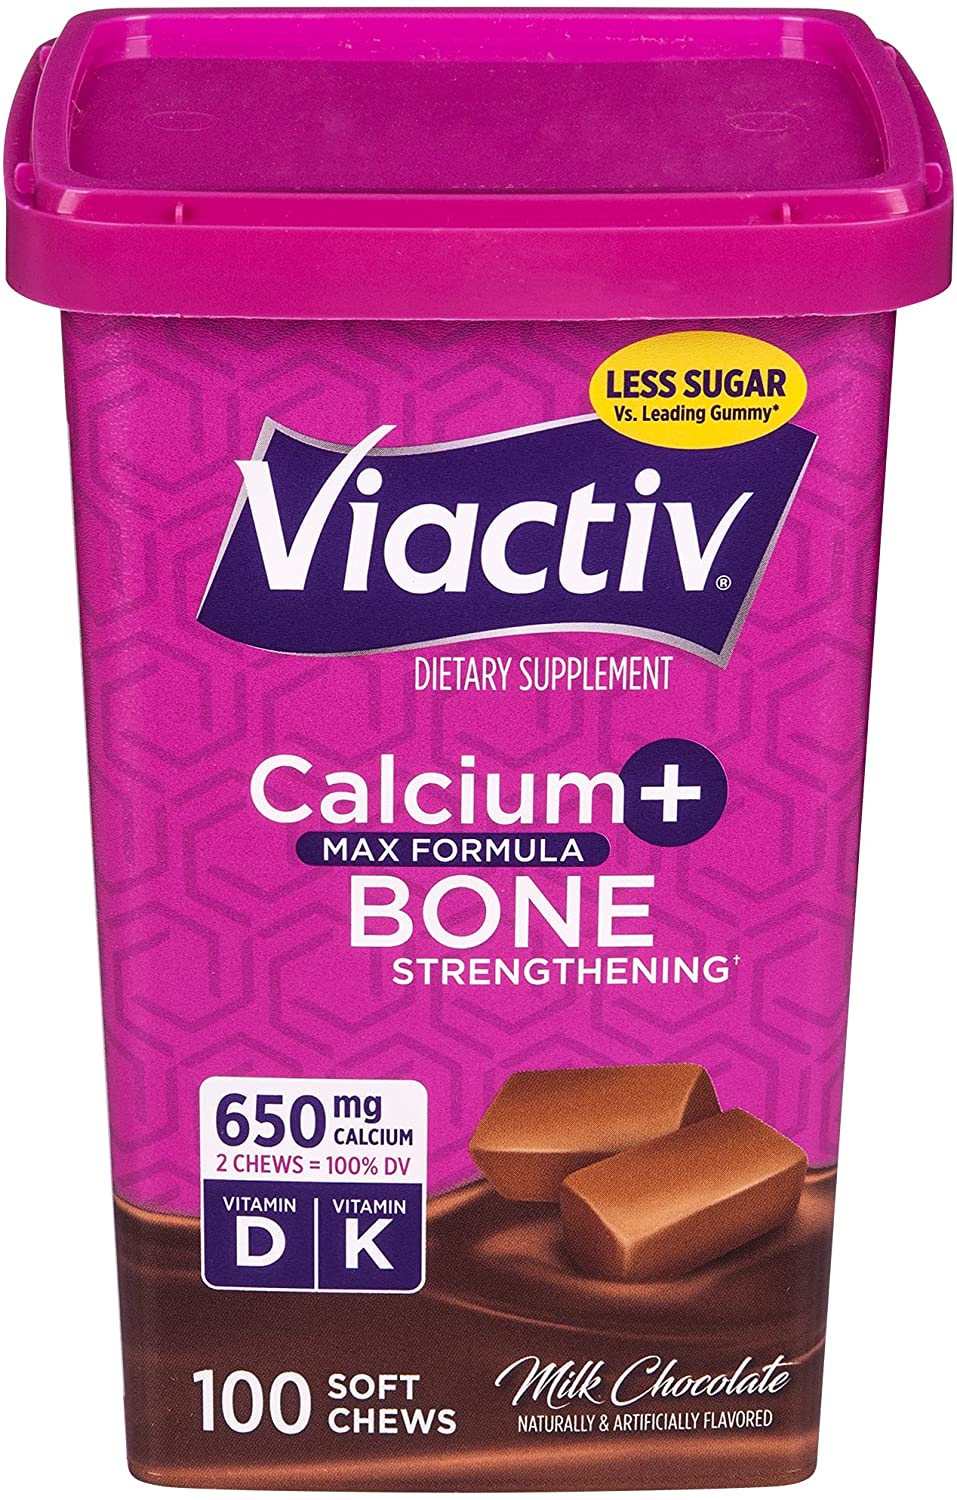 Viactiv Calcium + Vitamin D Supplement Soft Chews, Milk Chocolate, 100 Ct - image 1 of 10